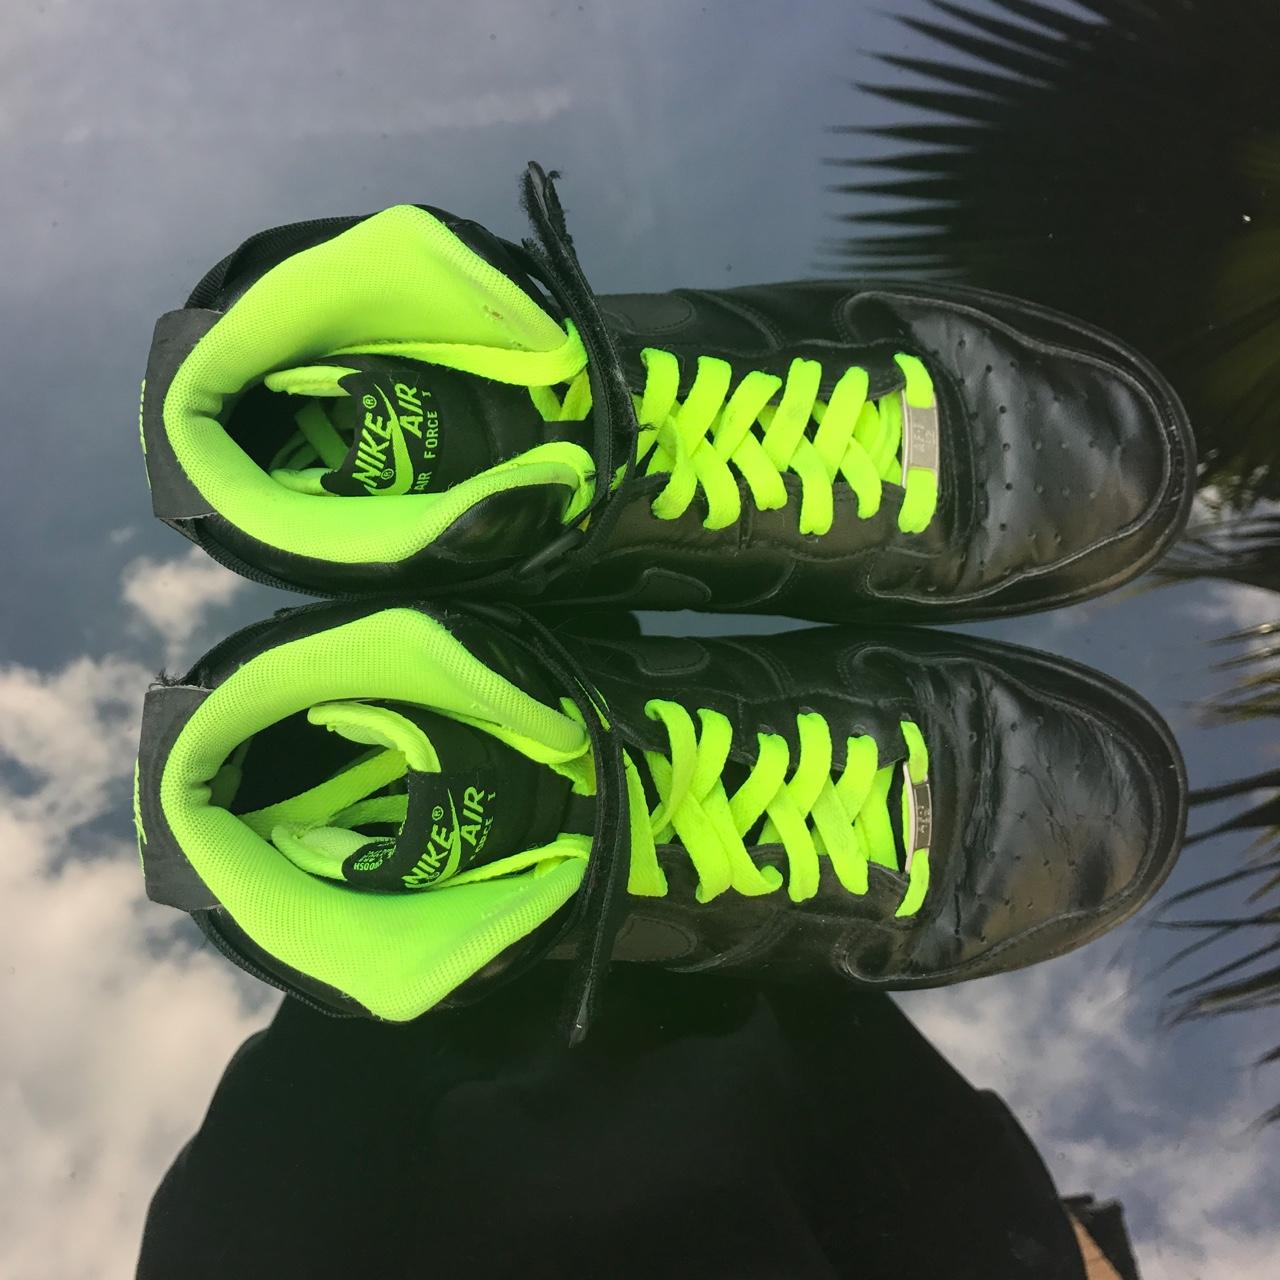 Neon Green Nike Air Force 1 Sneakers. Loveeee these - Depop